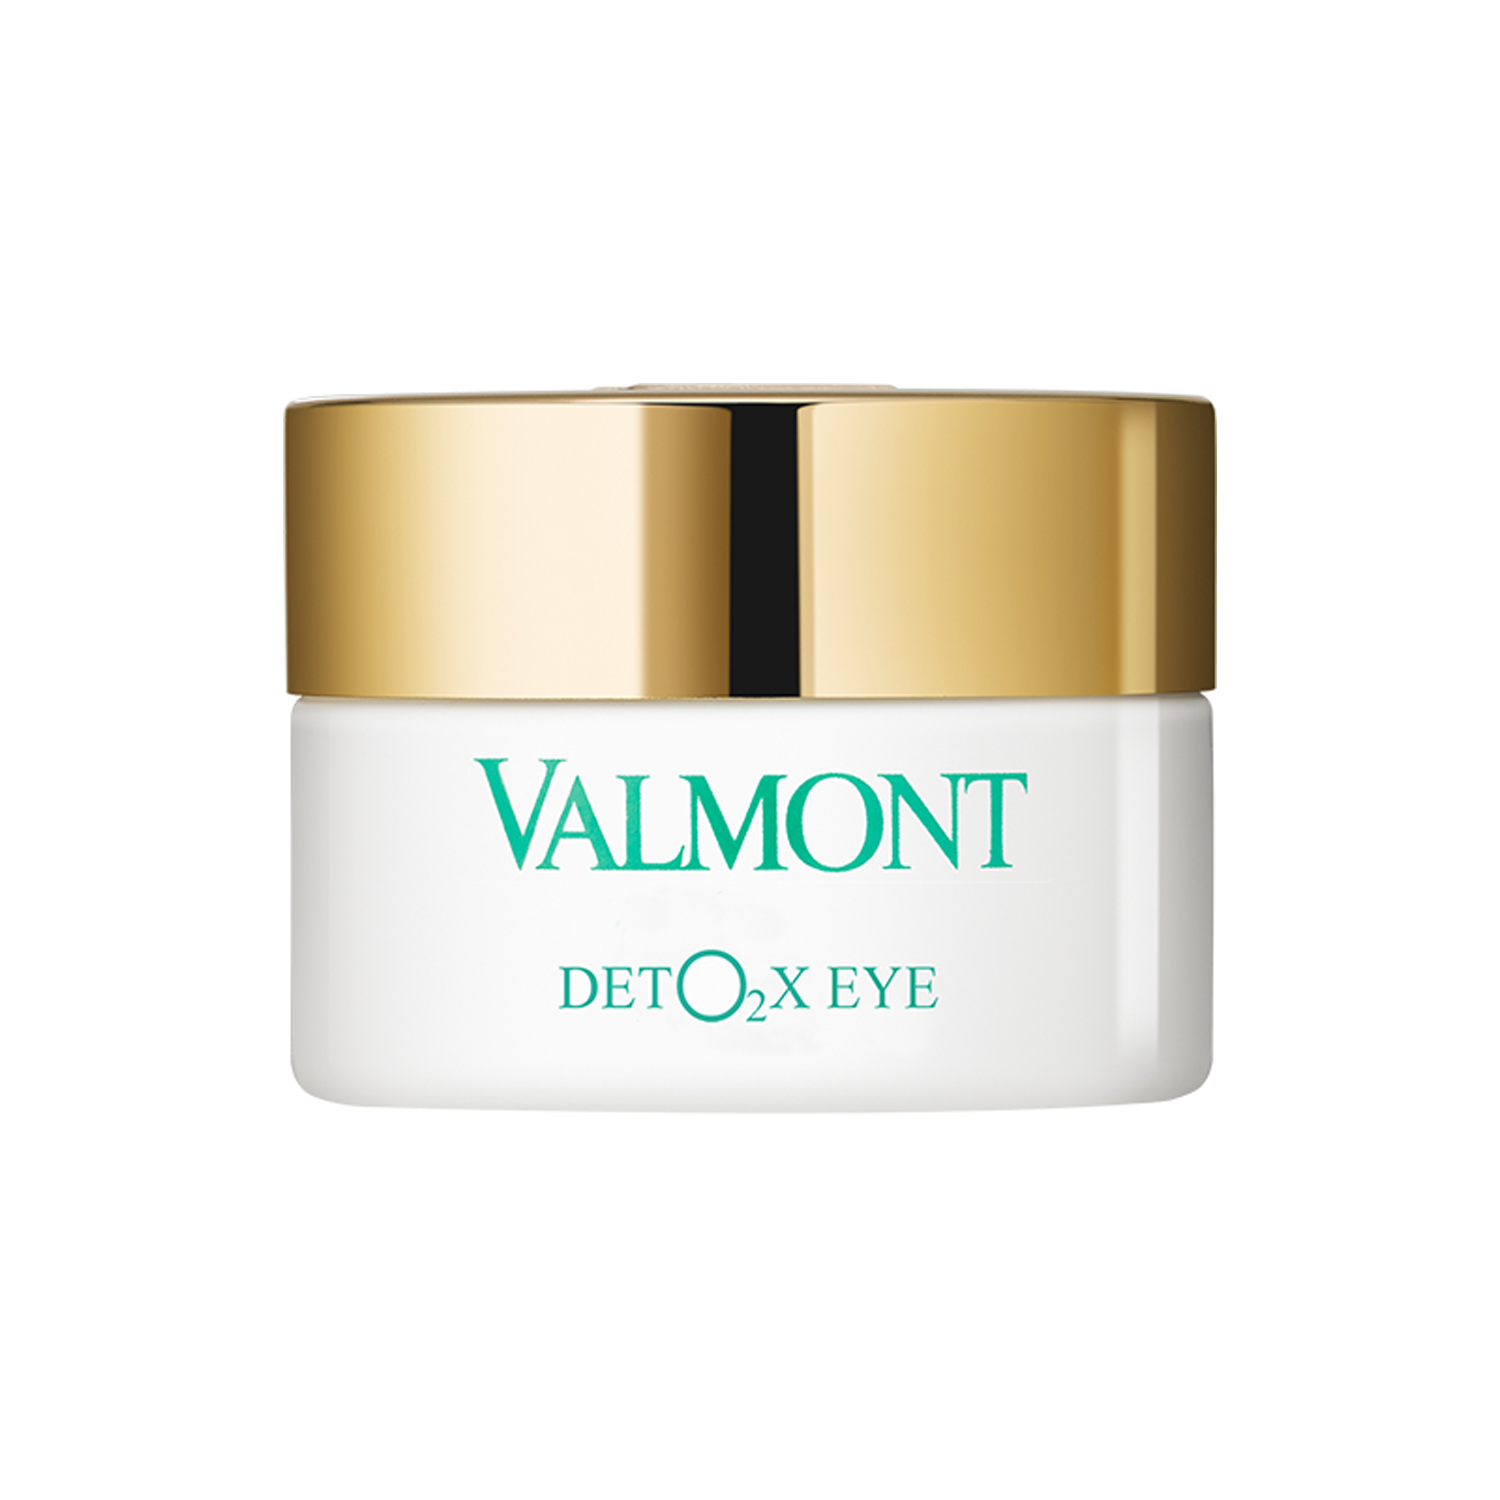 Valmont Deto2x Eye - Восстанавливающий кислородный крем для контура глаз